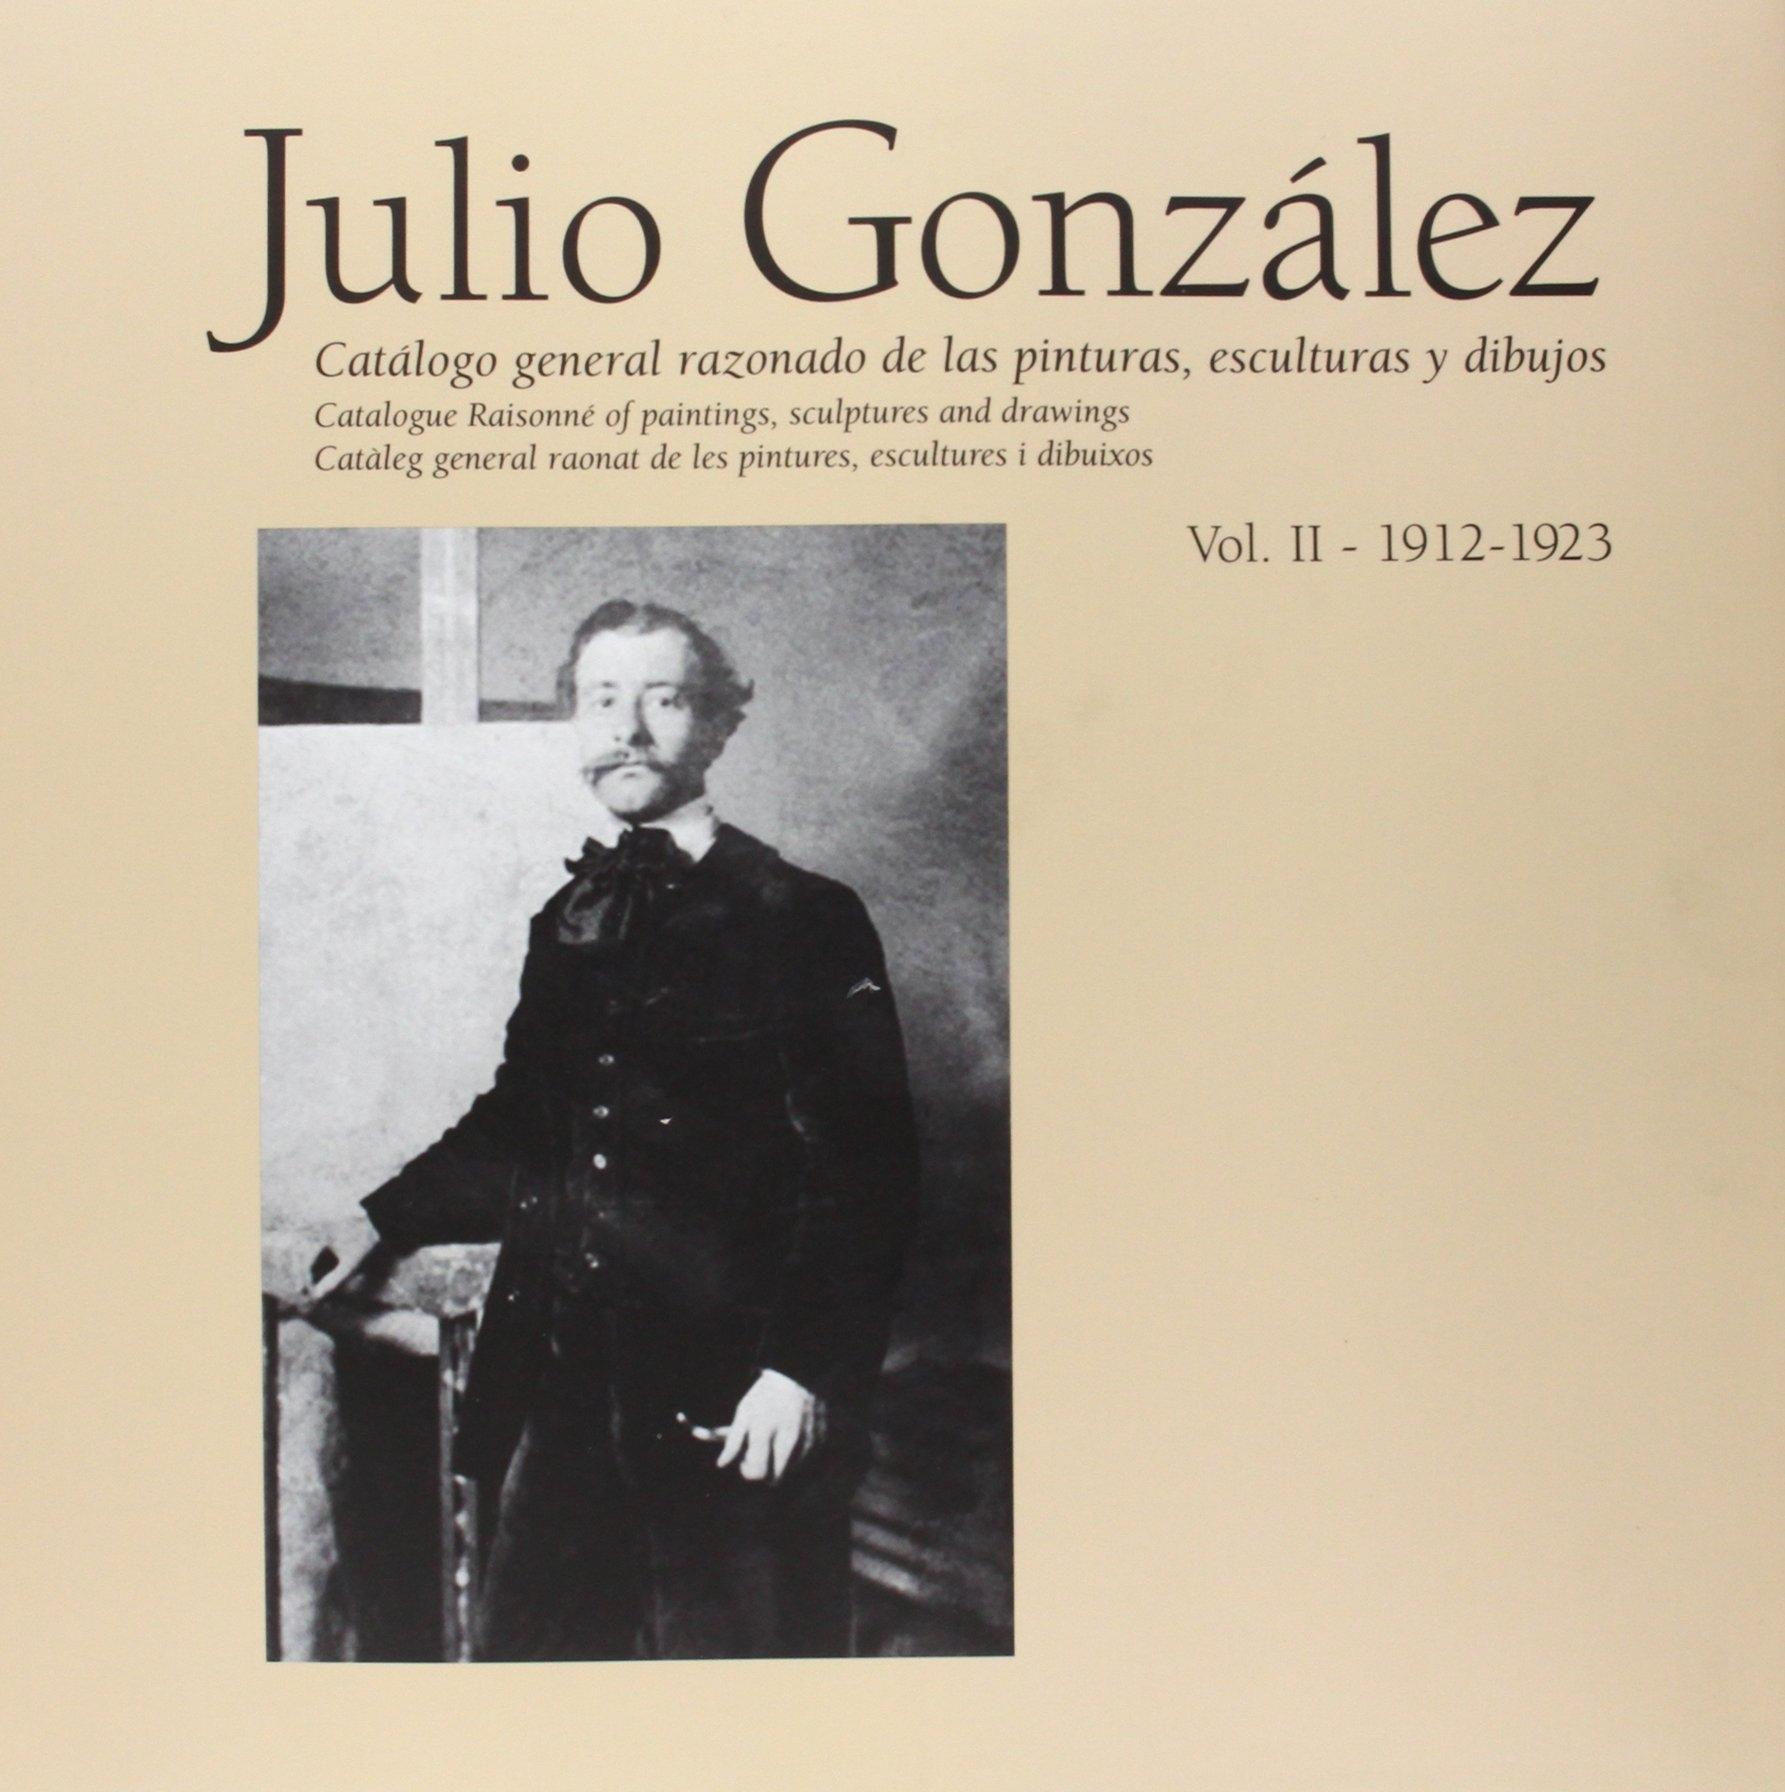 JULIO GONZALEZ  VOL II 1912 - 1923   "CATÁLOGO RAZONADO DE LAS PINTURAS, ESCULTURAS Y DIBUJOS". 